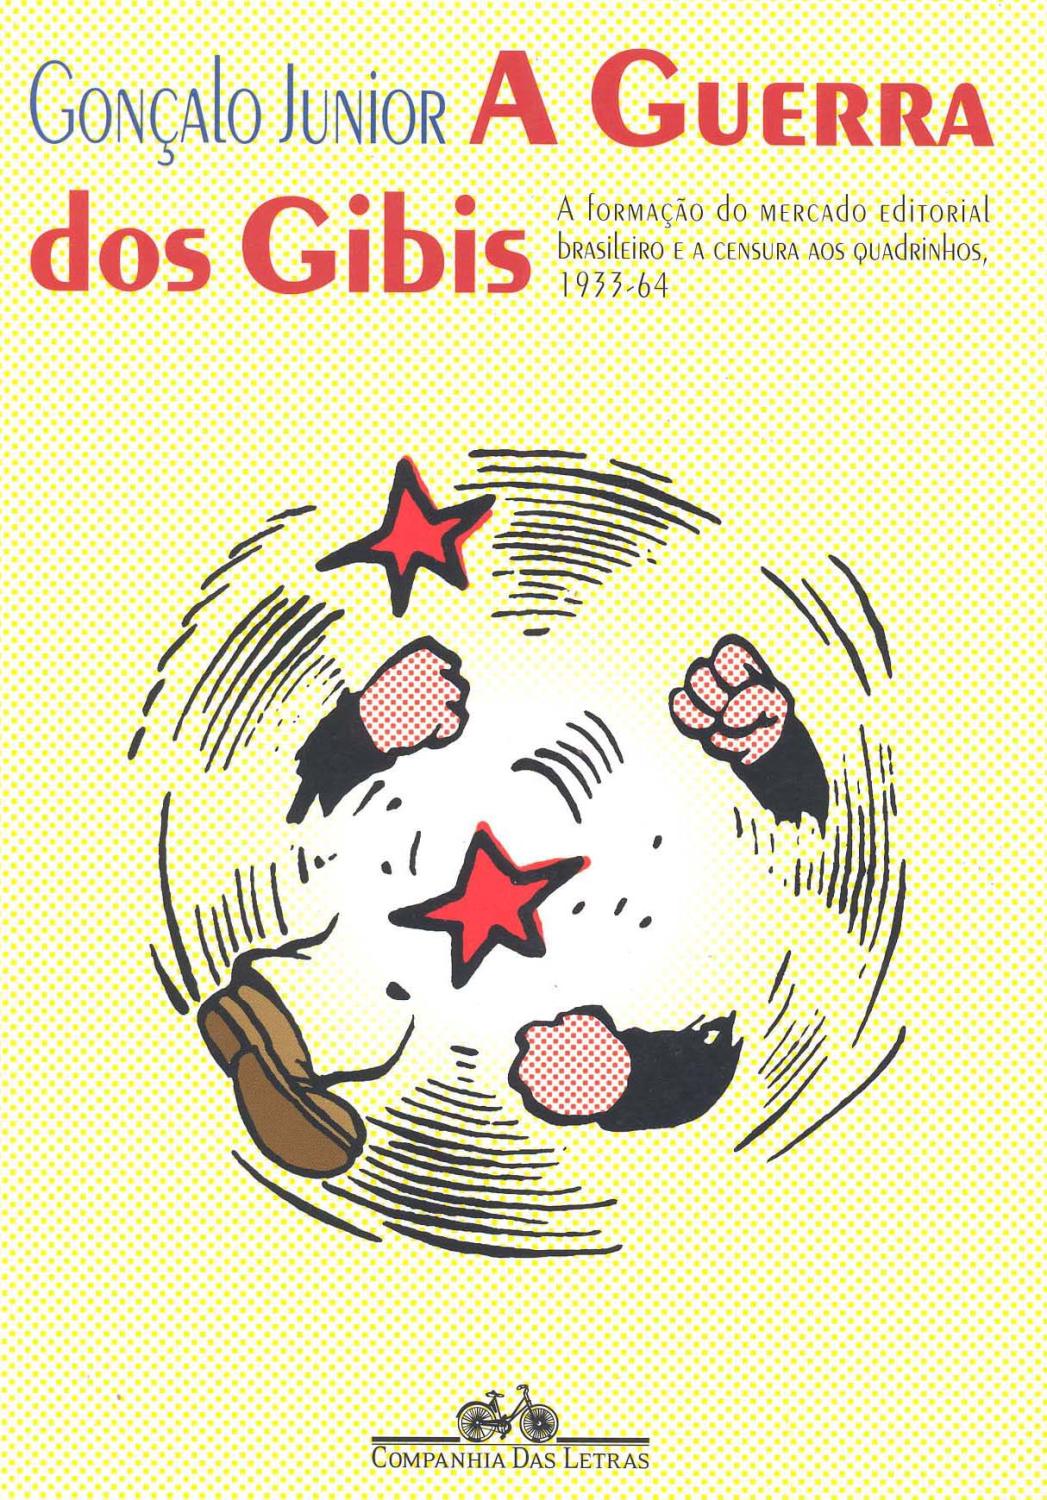 A guerra dos gibis : a formação do mercado editorial brasileiro e a censura aos quadrinhos, 1933-64. - Gonçalo Junior